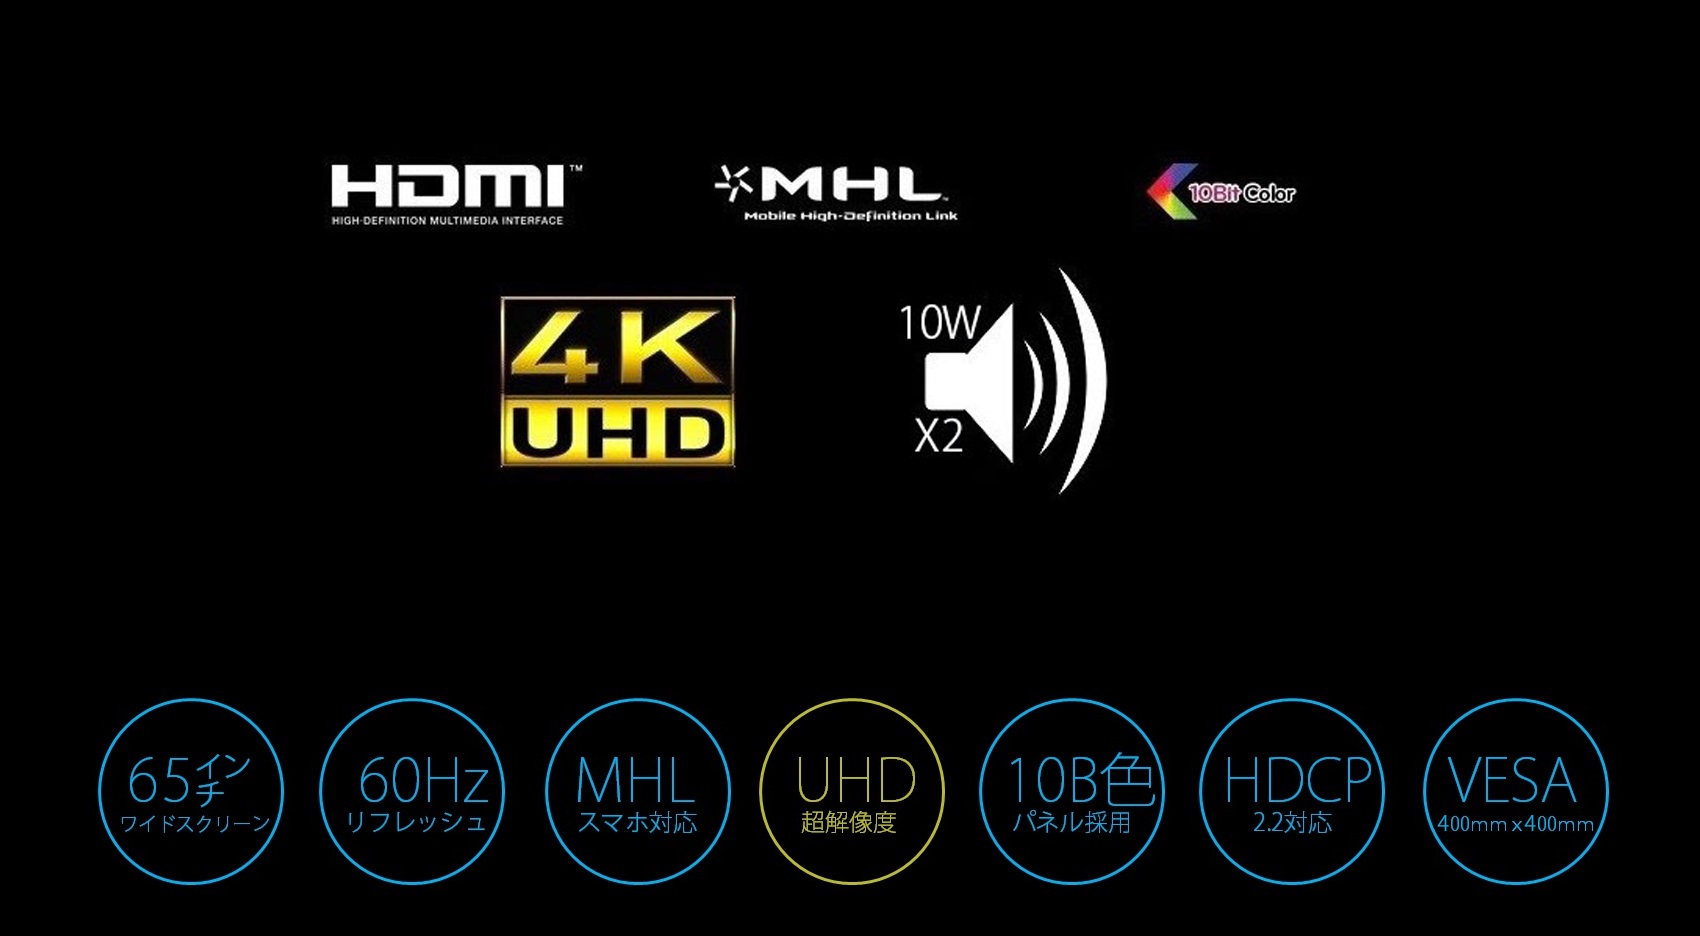 JN-VT6500UHD 4kモニター 65型 UHDディスプレイ HDMI2.0 HDCP2.2